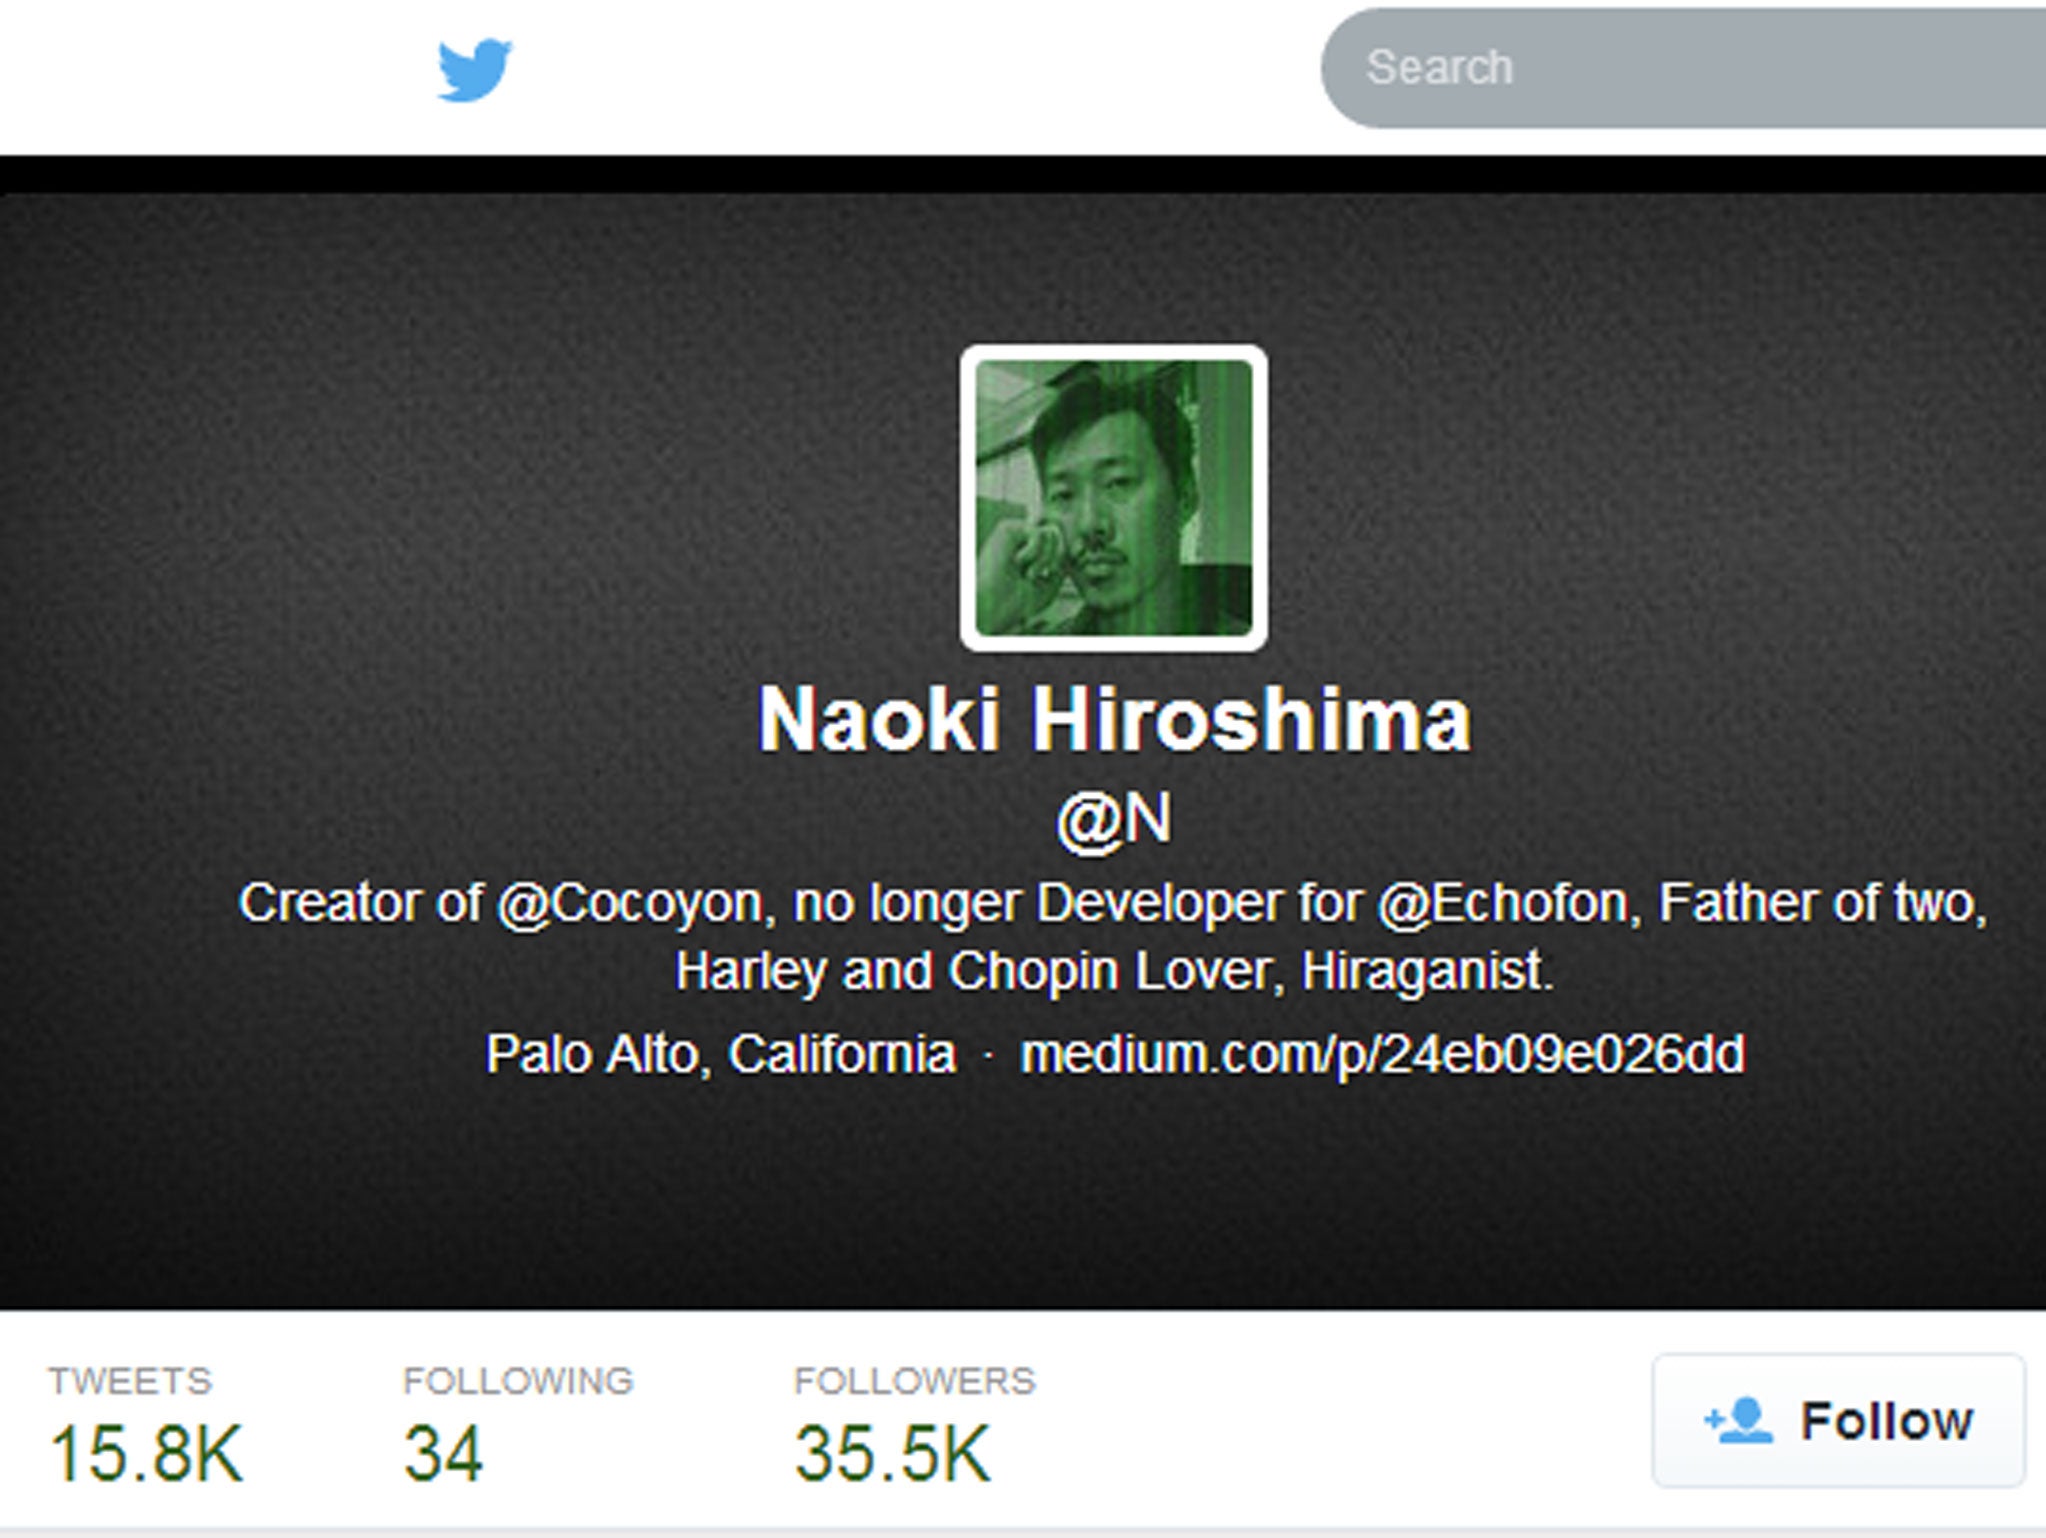 Naoki Hiroshima had his account,@N, stolen in January